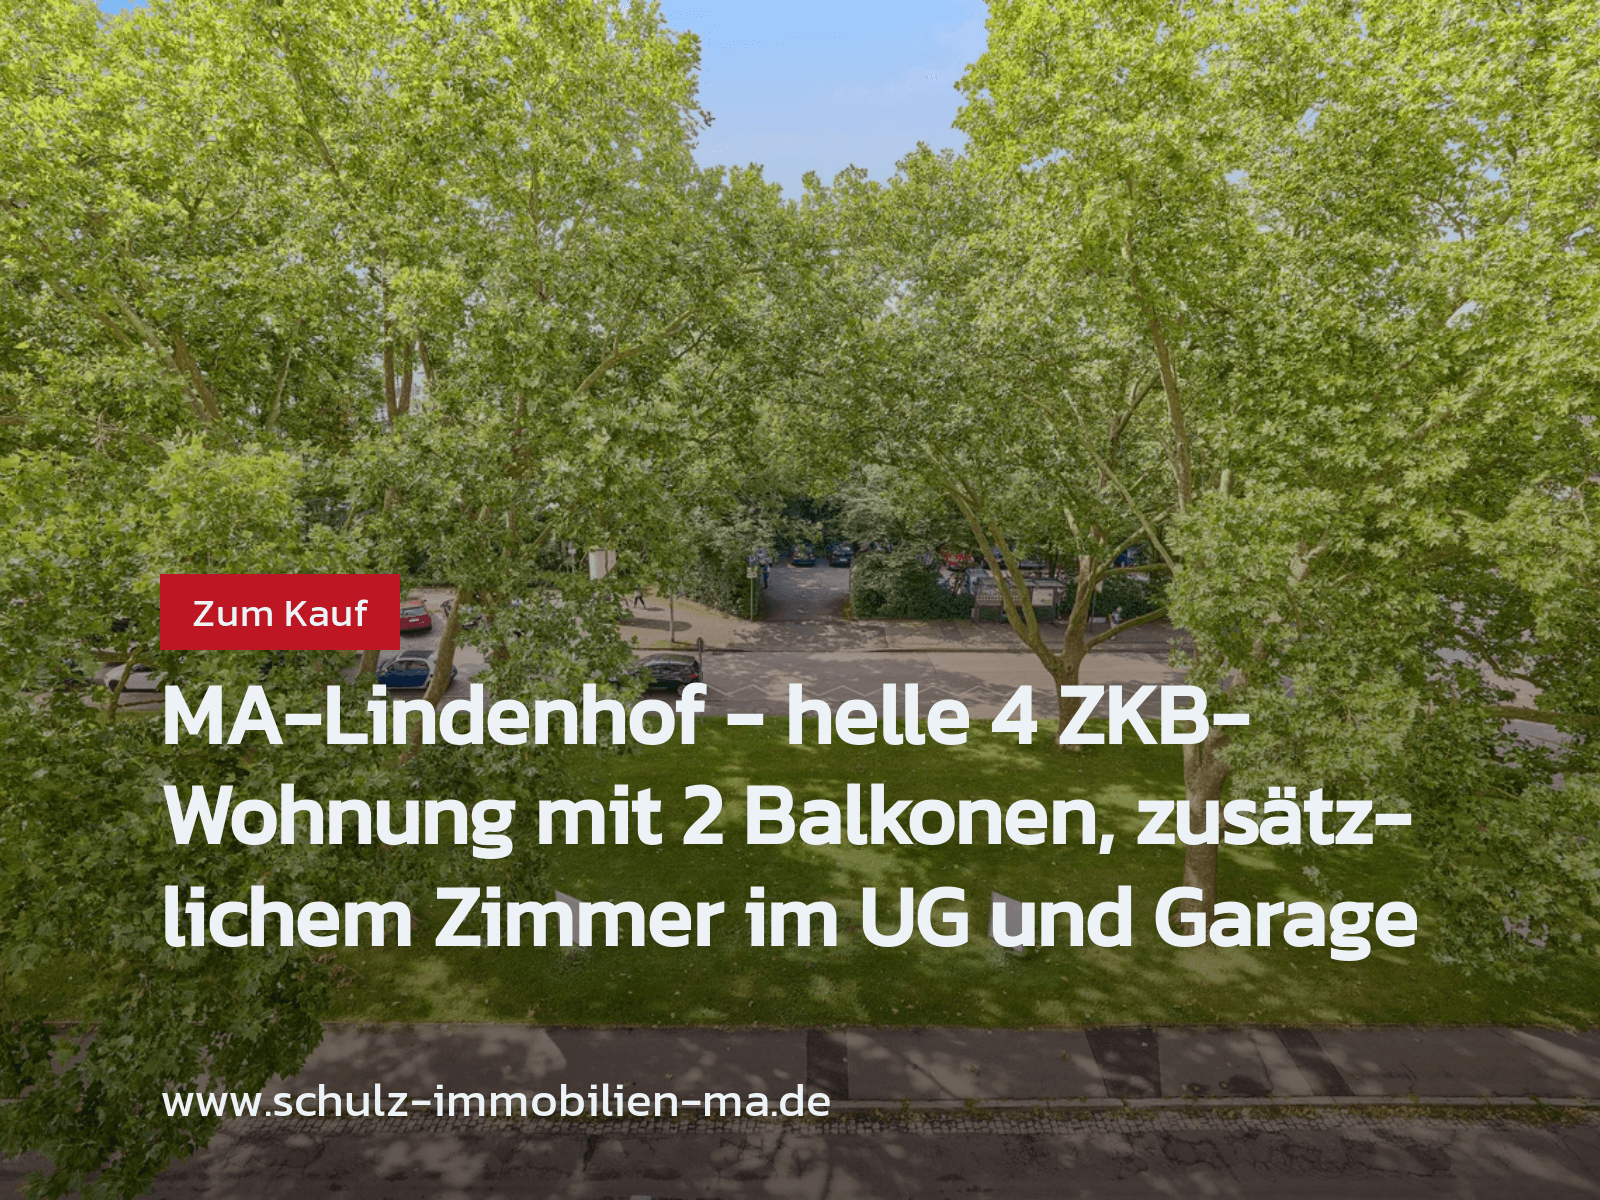 Neu im Angebot: MA-Lindenhof – helle 4 ZKB-Wohnung mit 2 Balkonen, zusätzlichem Zimmer im UG und Garage